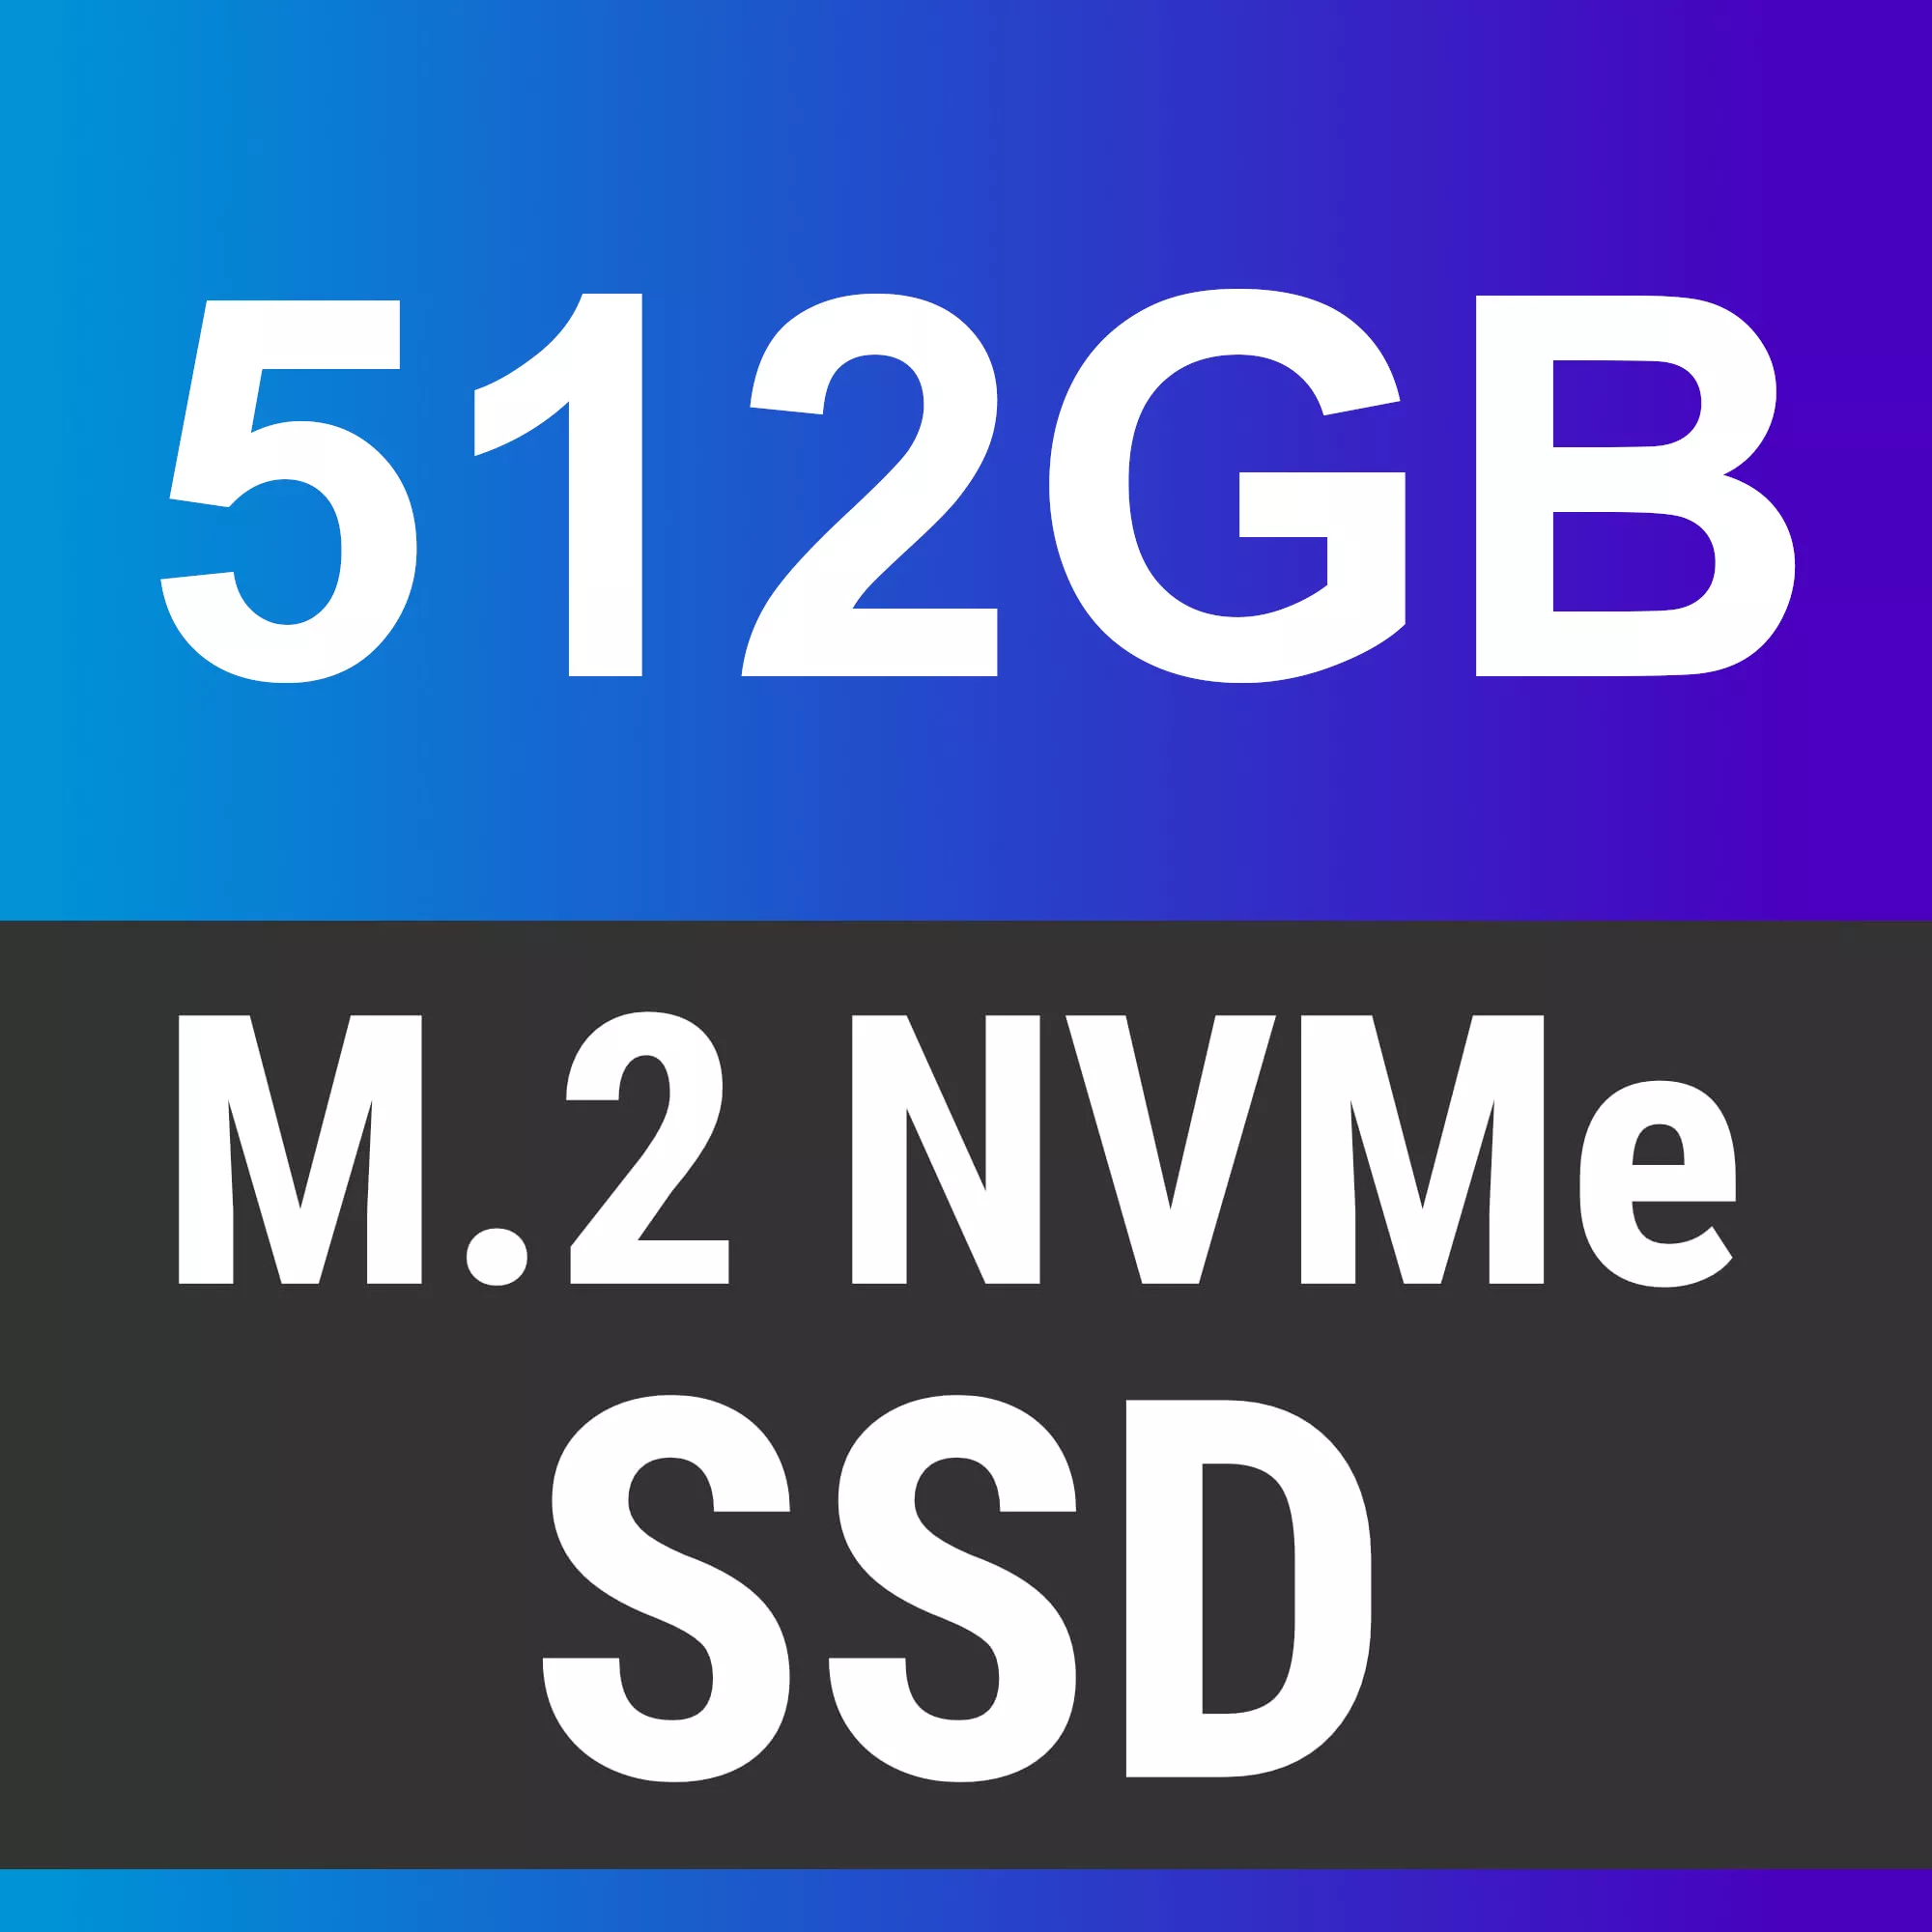 Silent Desktop PC Madrid | Intel Core i7-8700 | Nvidia GeForce GT 610 2GB |  16GB RAM | 512GB m.2 SSD | 2 TB HDD | Windows 11 | WiFi / W-LAN | 